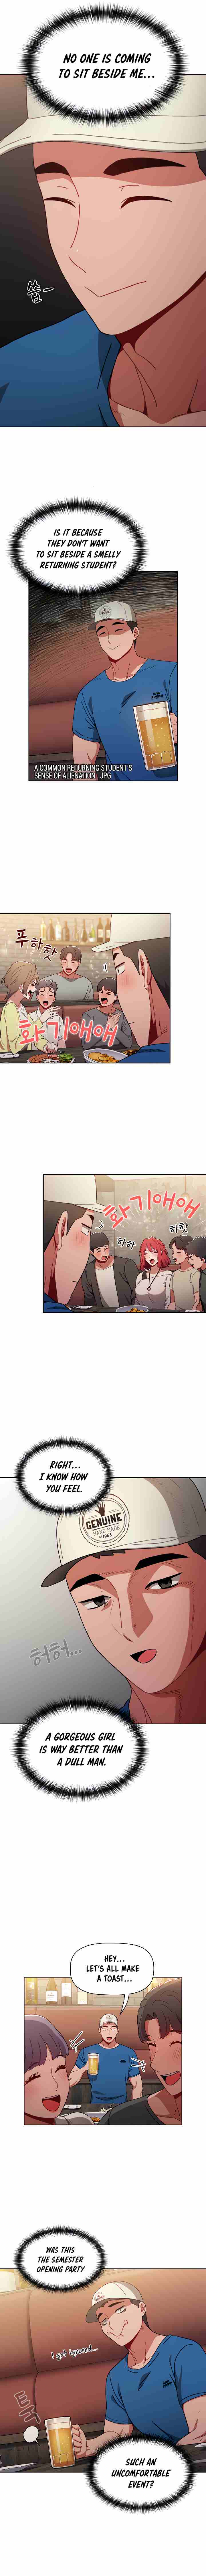 [Team Biyang, Whistle] Dorm Room Sisters Ch.20/? [English] [Manhwa PDF]